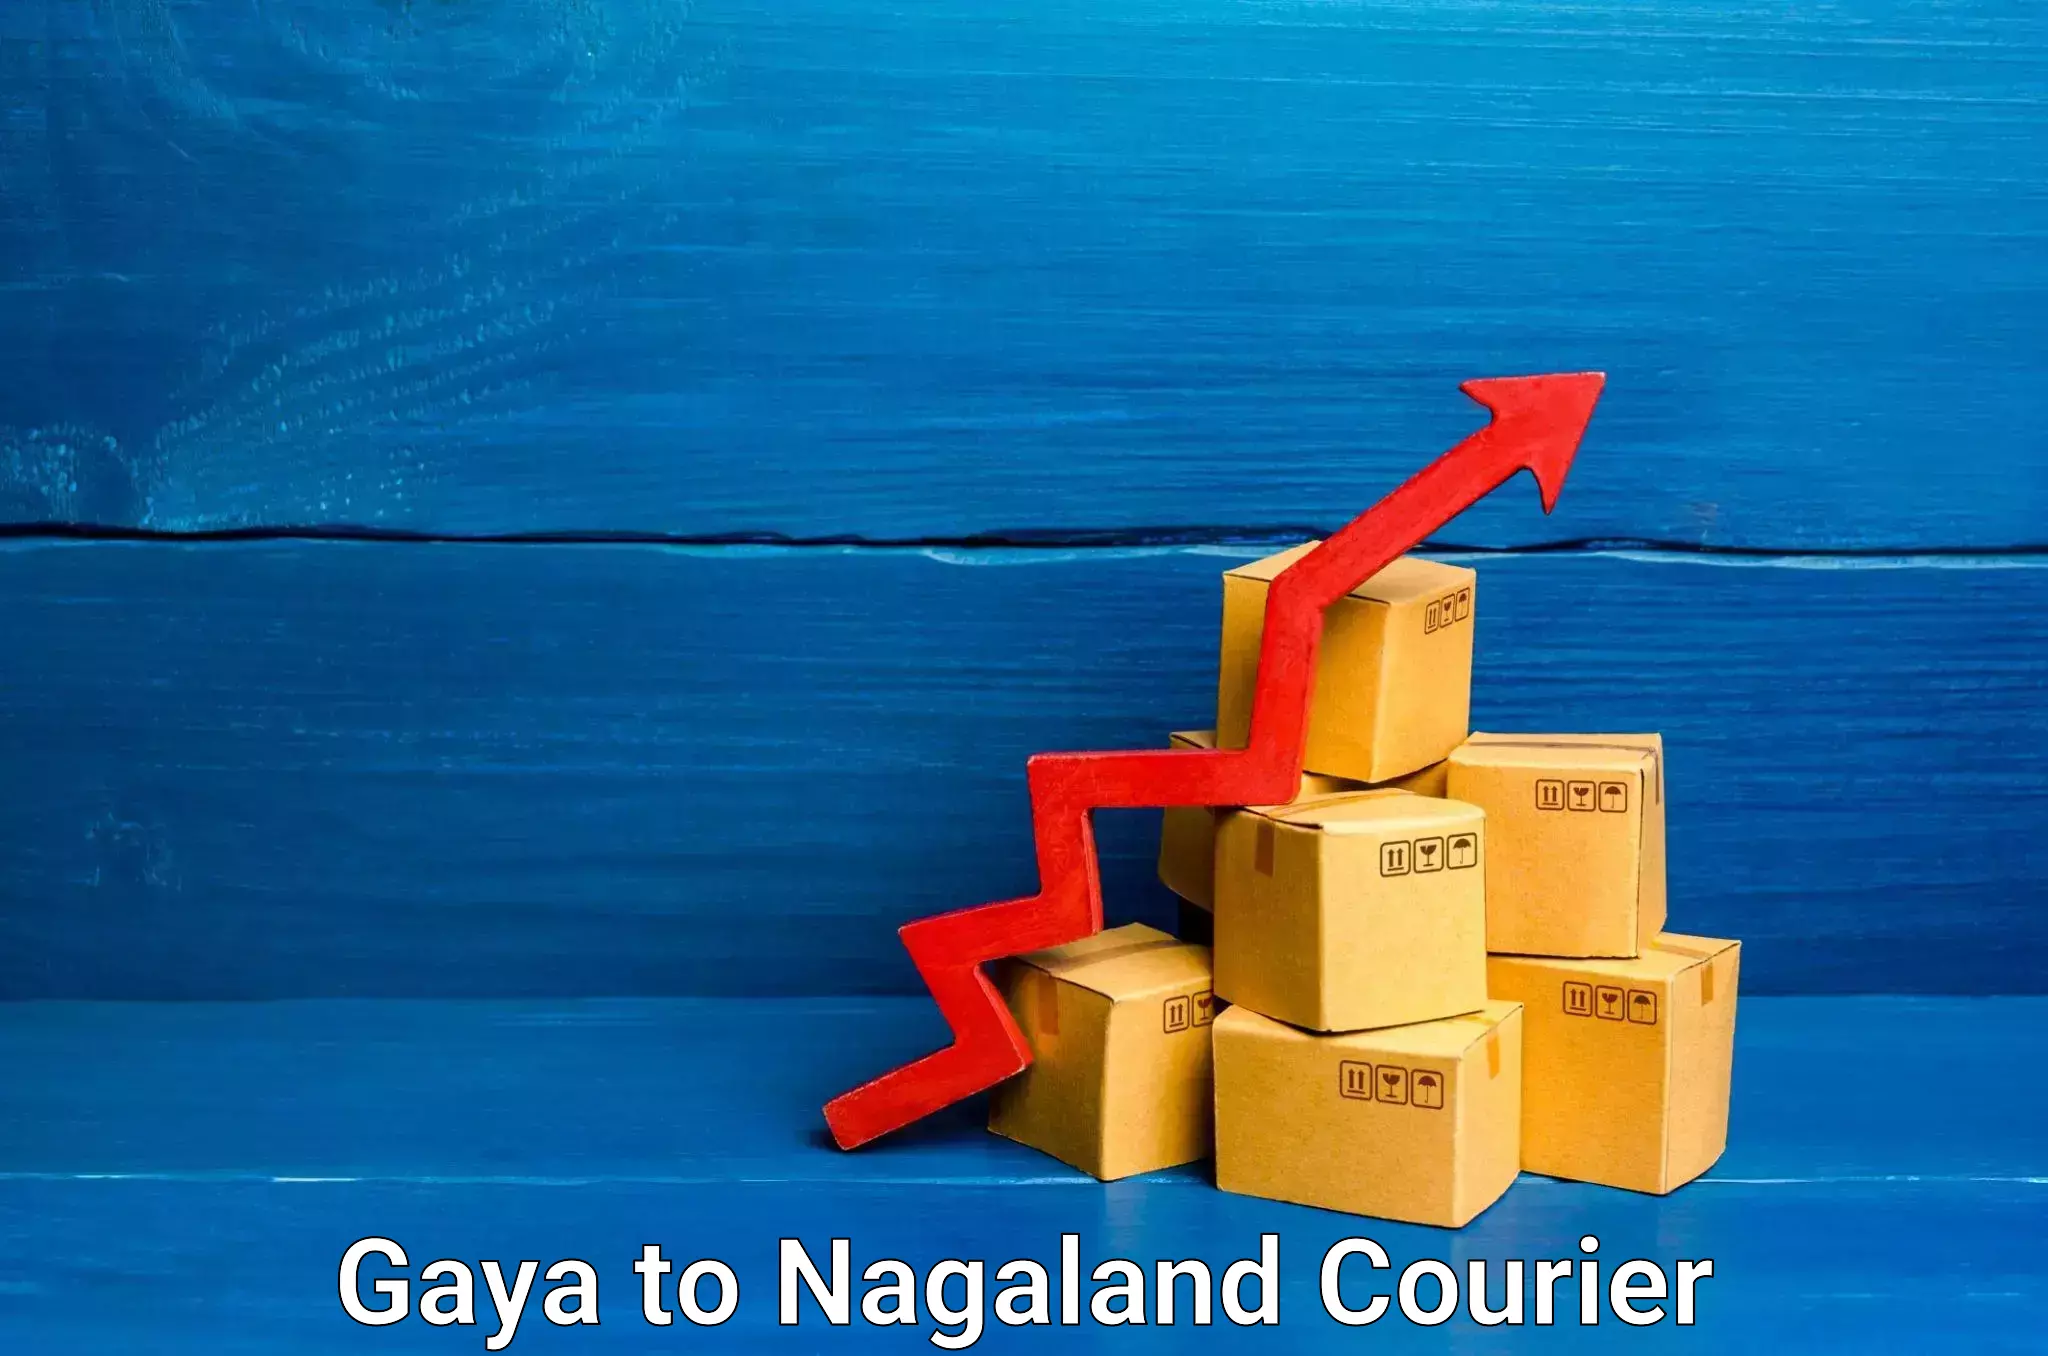 Professional moving company Gaya to Nagaland